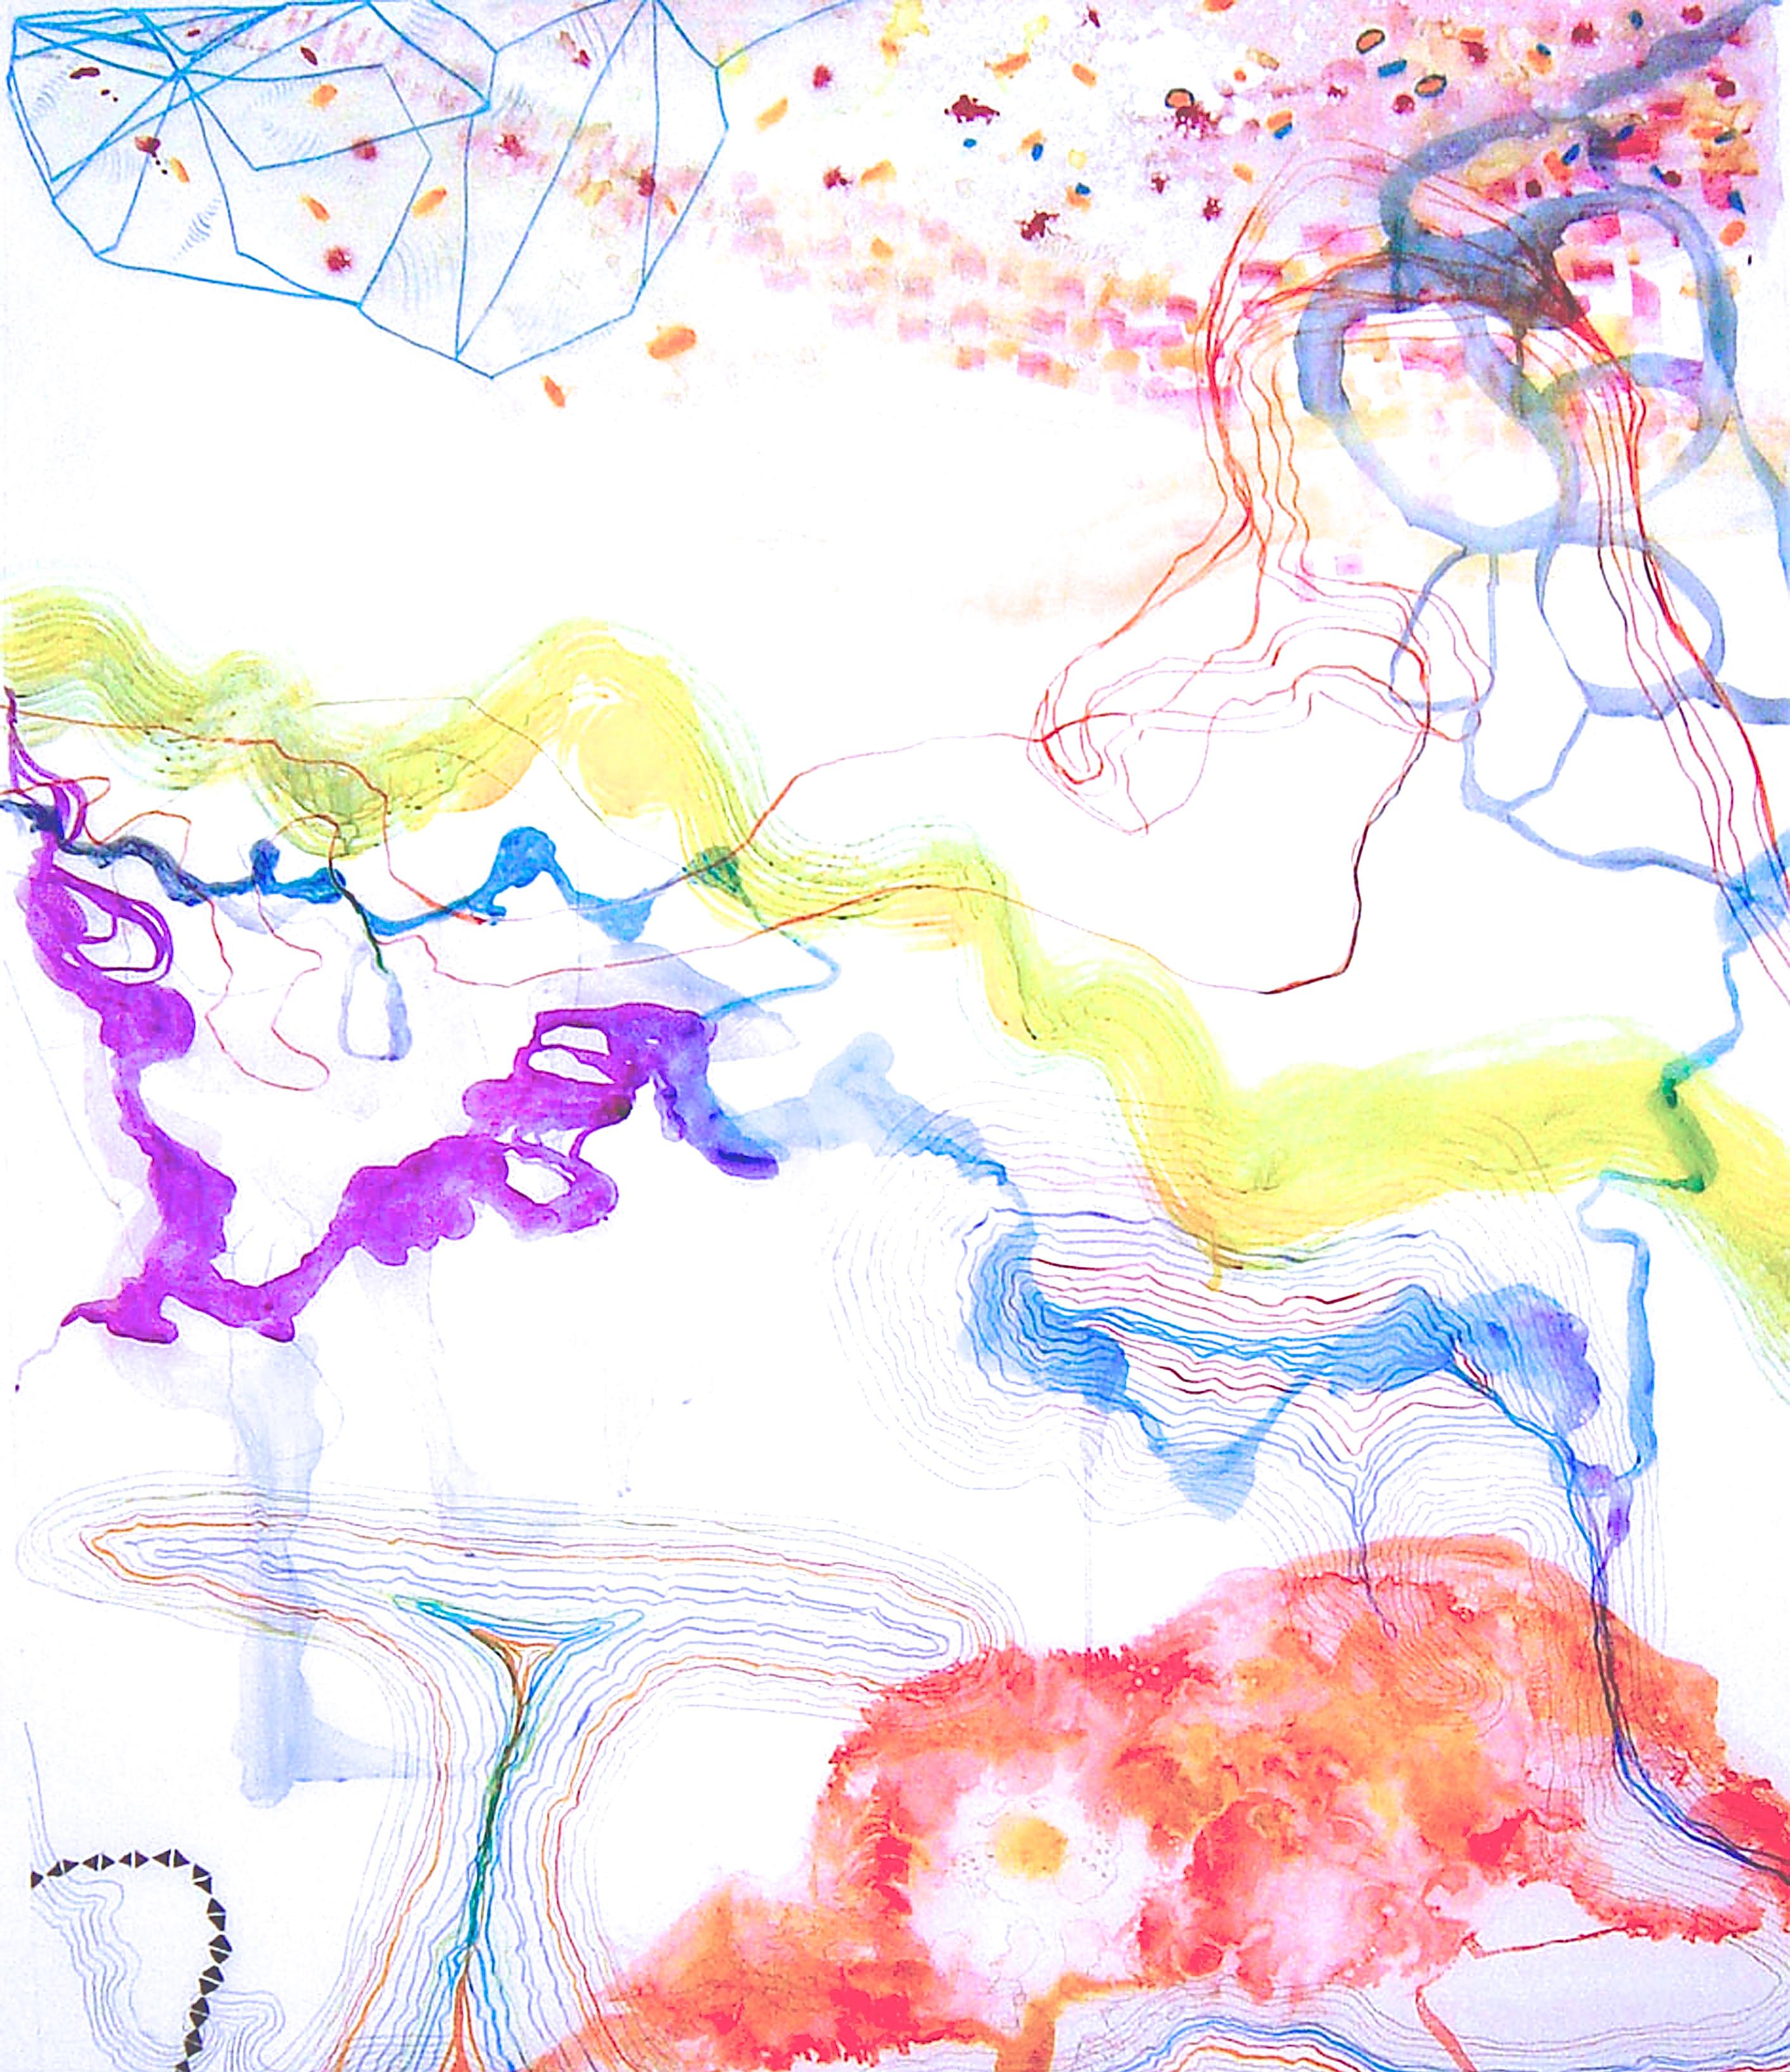 Abstract Drawing Susan Sharp - ""Trace #13""  Grande abstraction aquatique colorée jaune, violette, bleue, rouge, violette